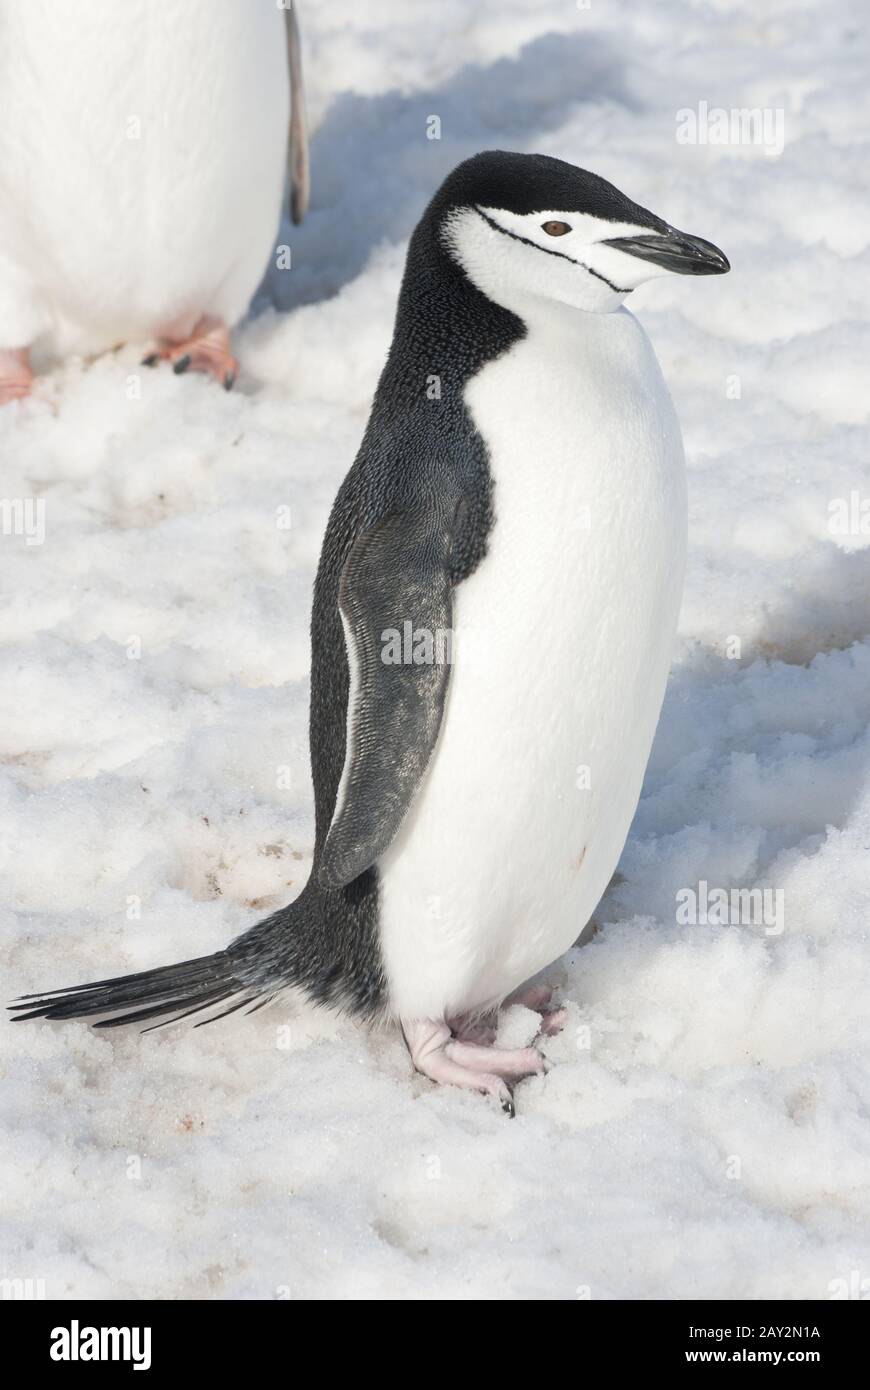 Giornata primaverile del pinguino antartico. Foto Stock